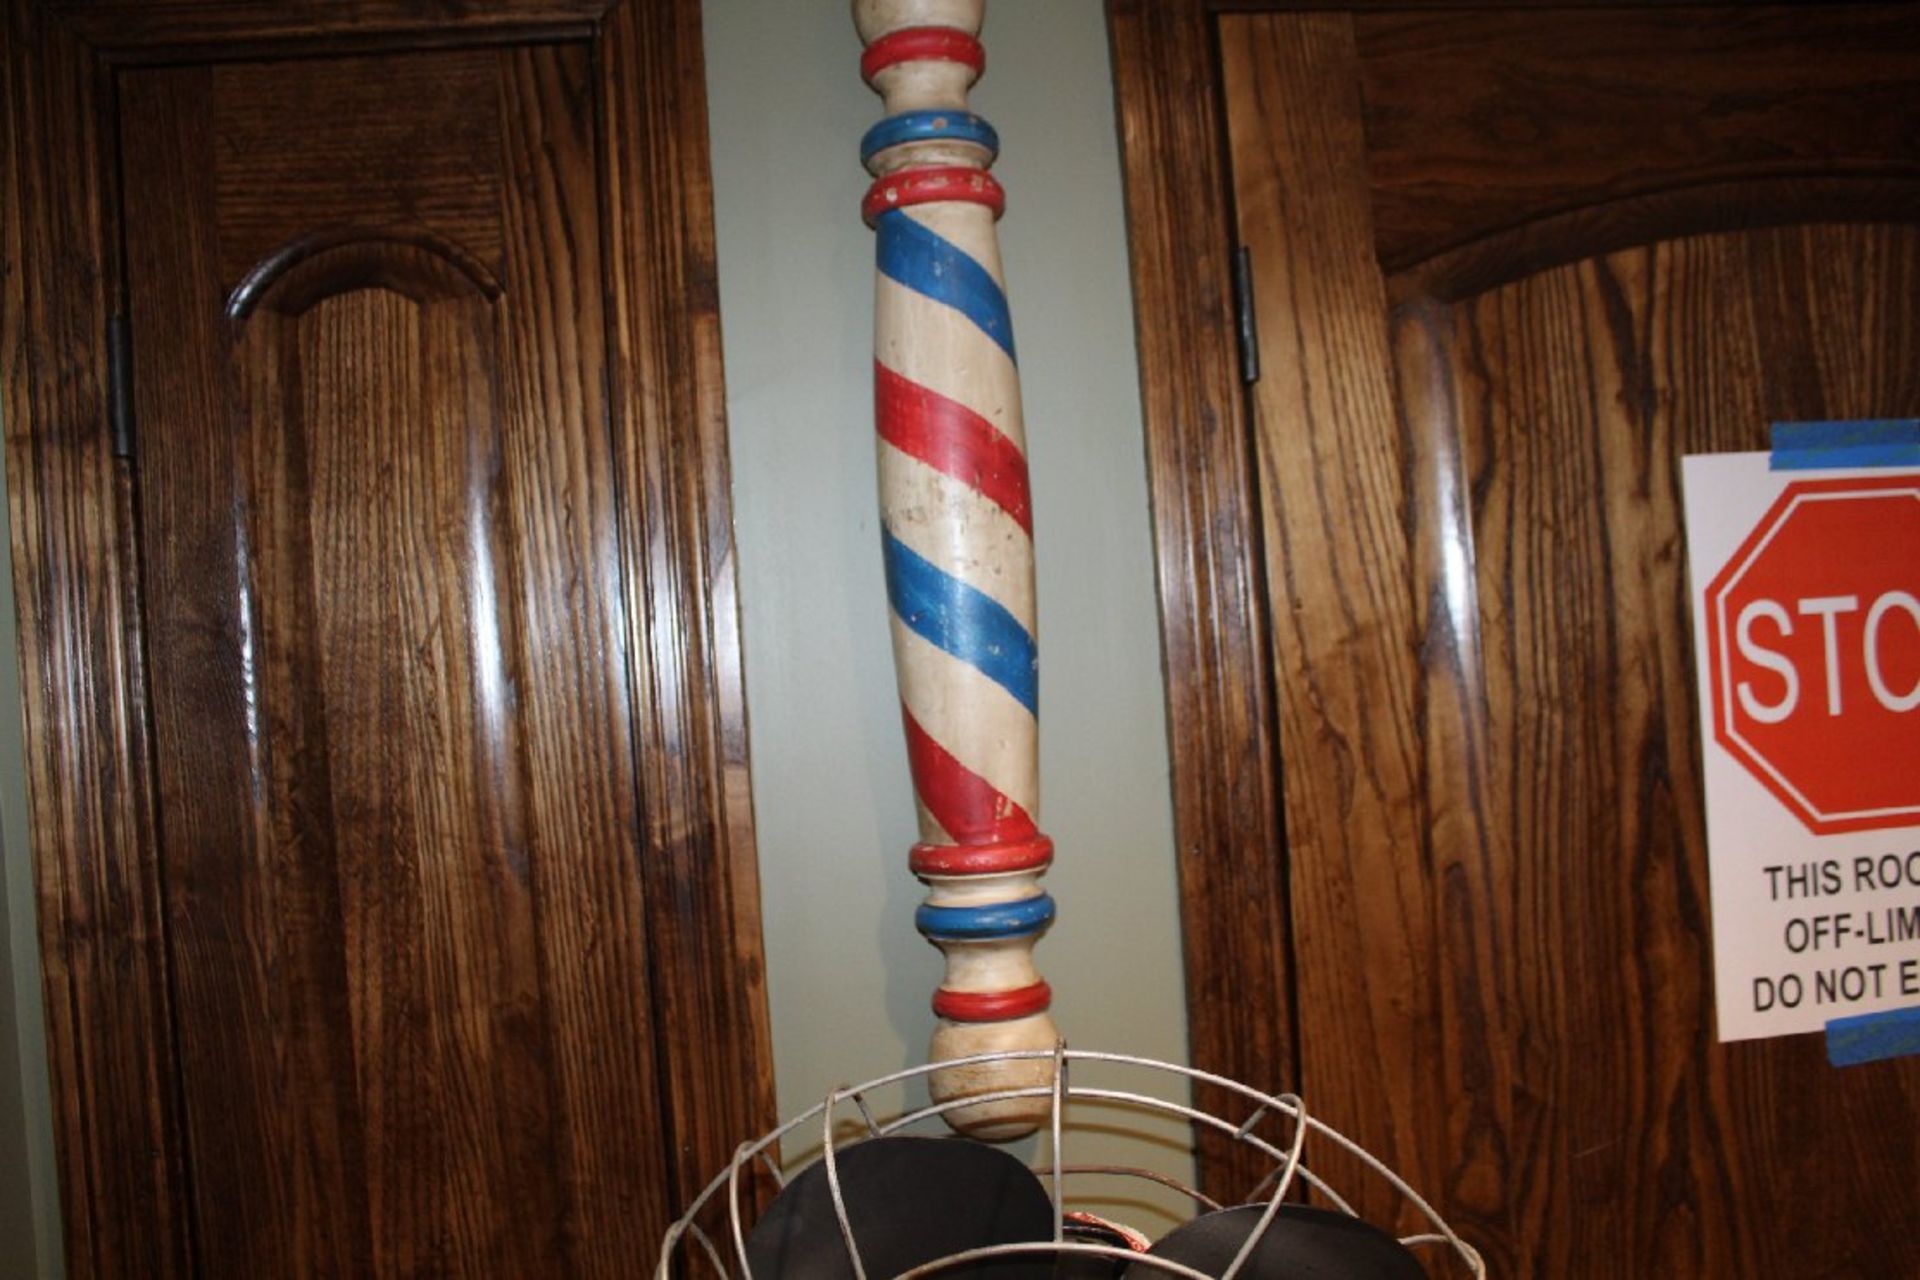 Hunter Fan Vintage Oscillating Fan on Decorative Pedestal, Plus Barber Shop Decorative Wall Hanging - Image 2 of 3